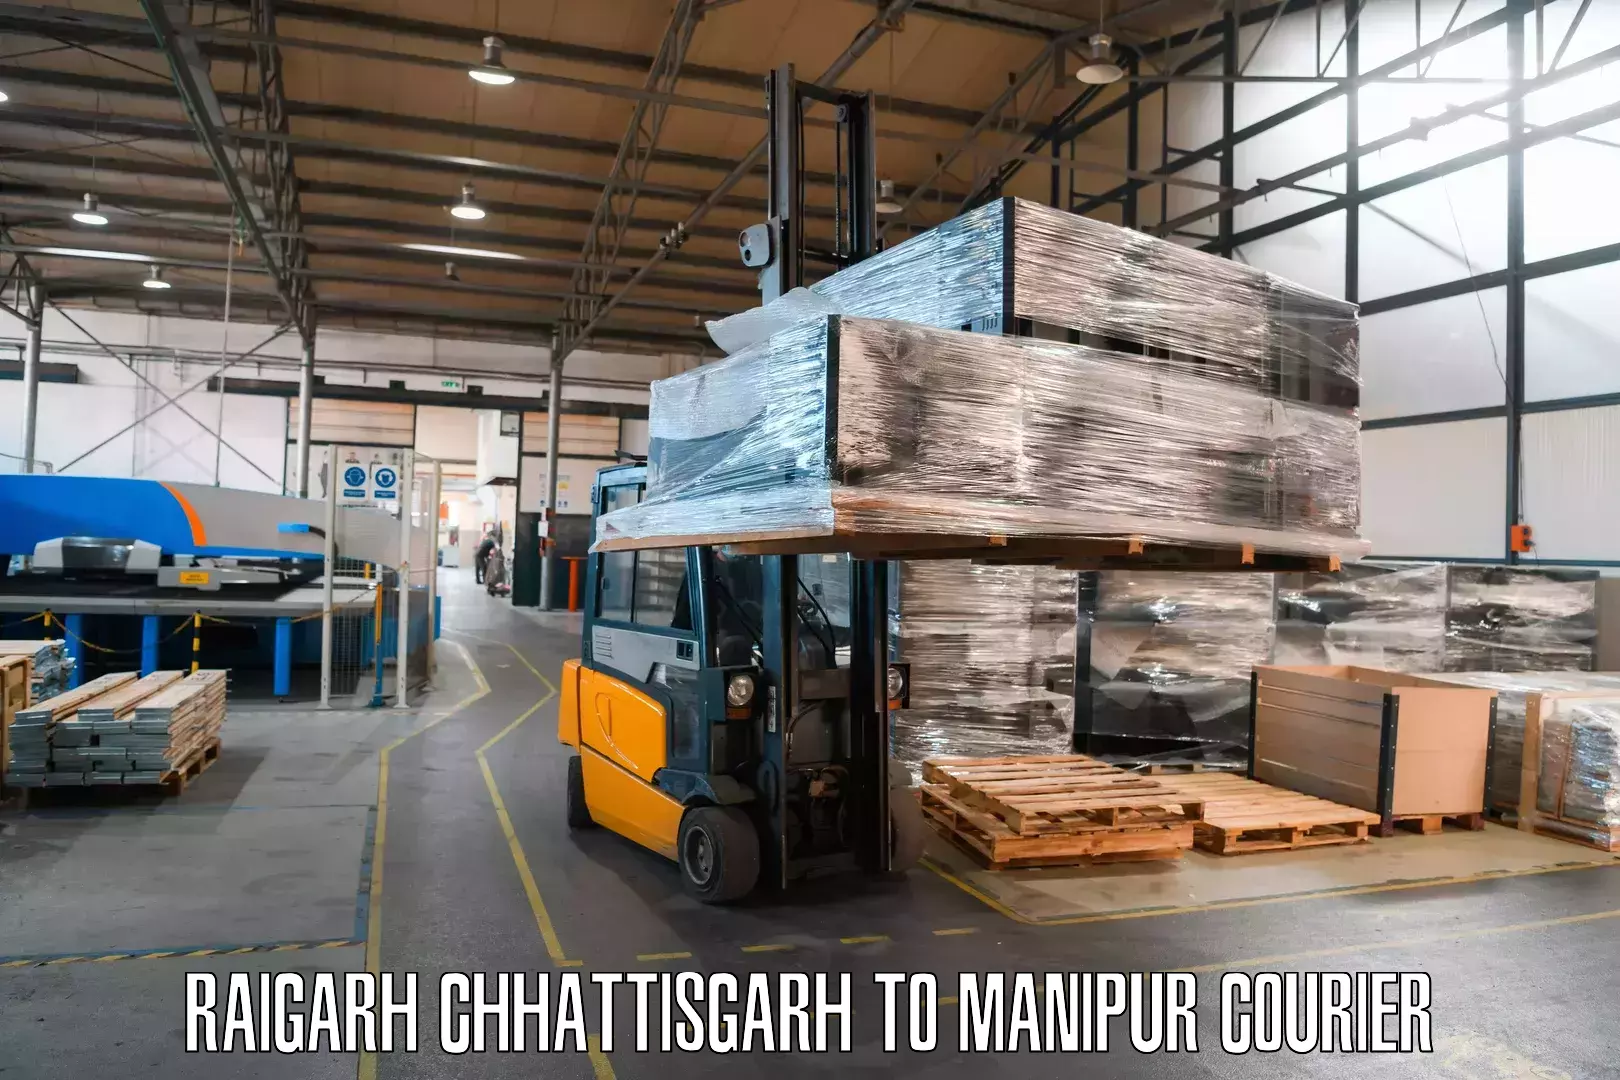 Rural area delivery Raigarh Chhattisgarh to Senapati